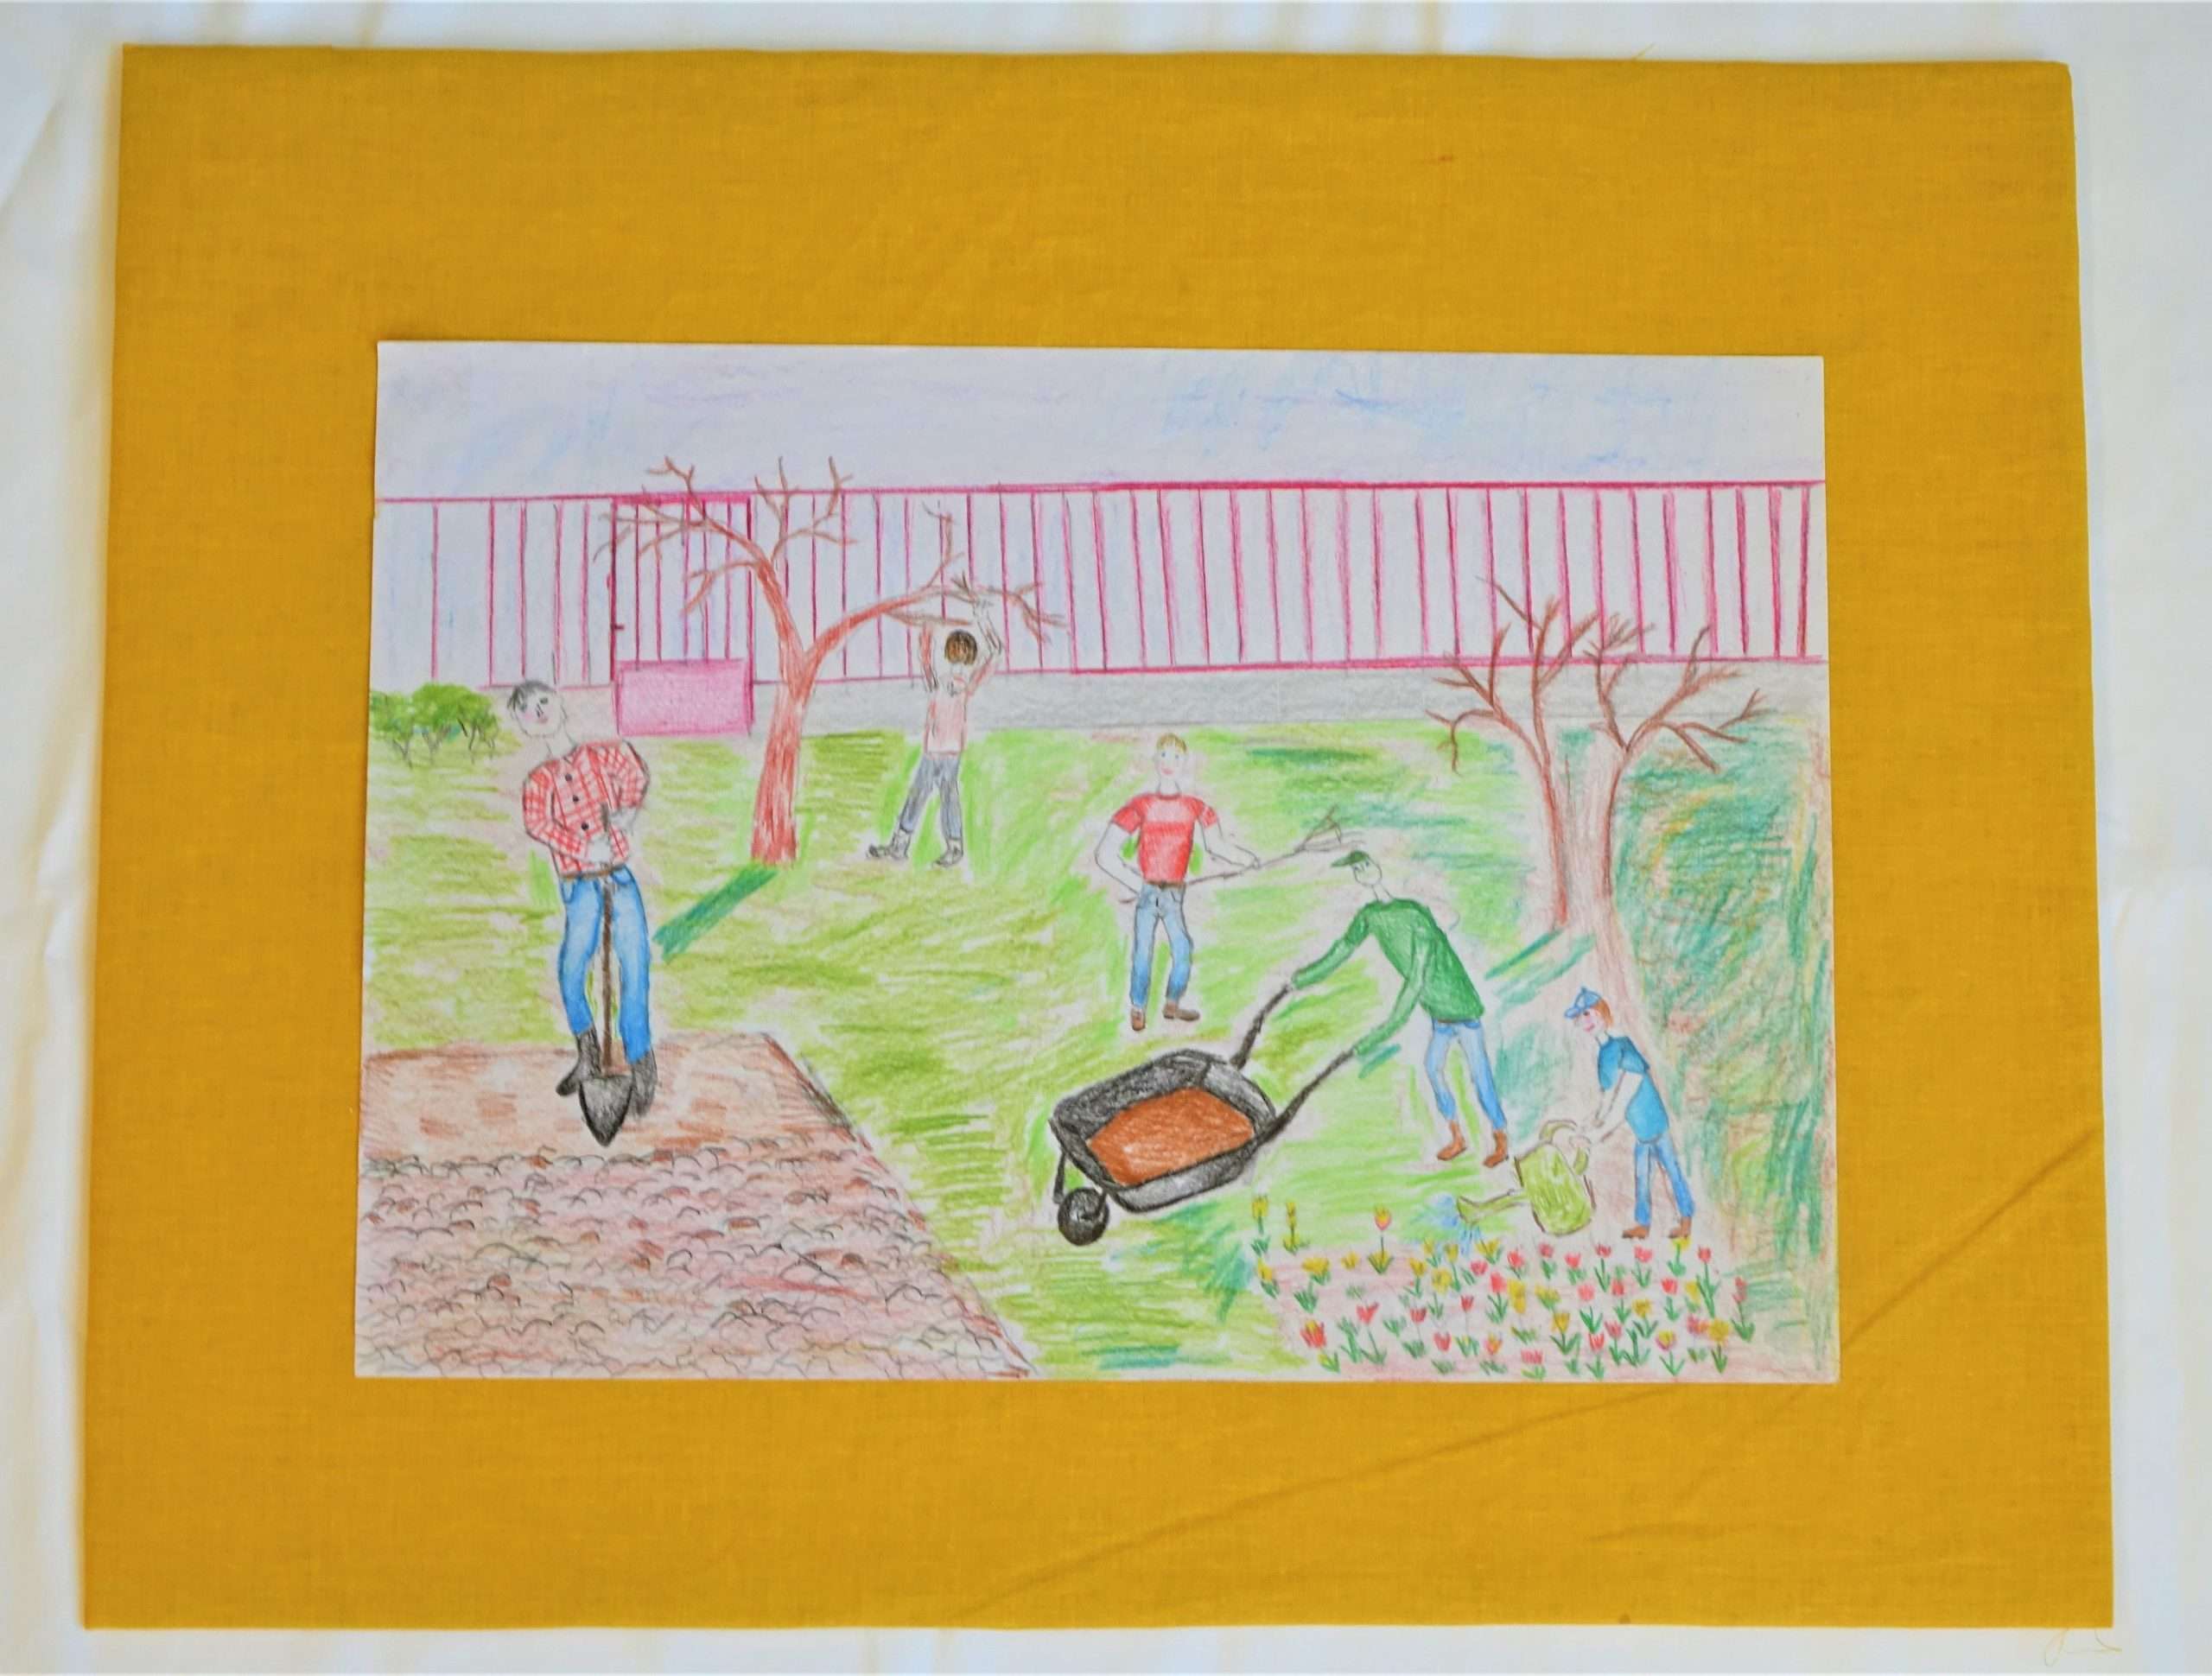 A pályamű egy színes rajz, amelyen 5 fiatalember kertészkedik. Az egyik ás, a másik gallyaz egy fát, a harmadik gereblyéz, a negyedik talicskát tol, az ötödik pedig locsolókannával sárga és piros tulipánokat öntöz.